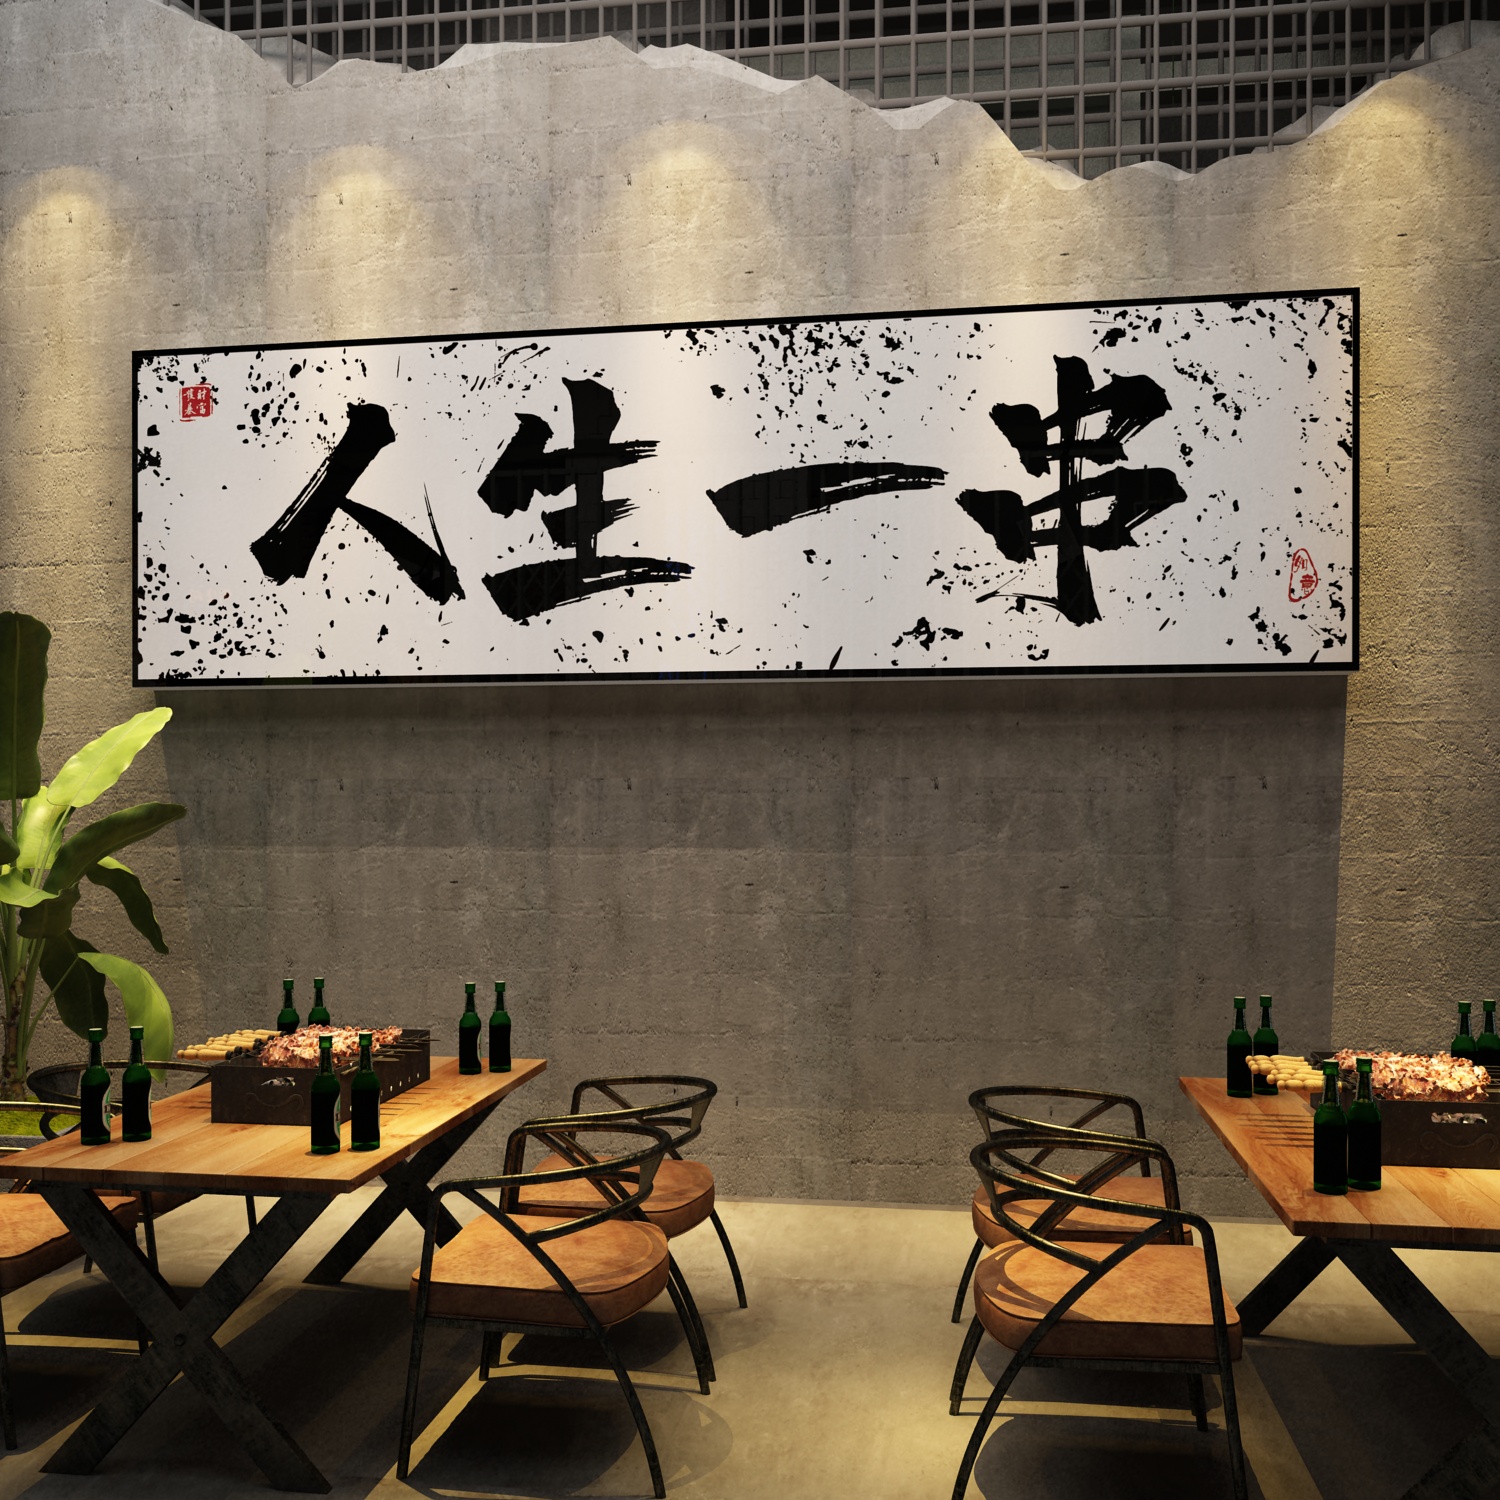 网红烧烤店装饰创意墙面品工业风餐饮饭店布置火锅炸串肉壁纸贴画